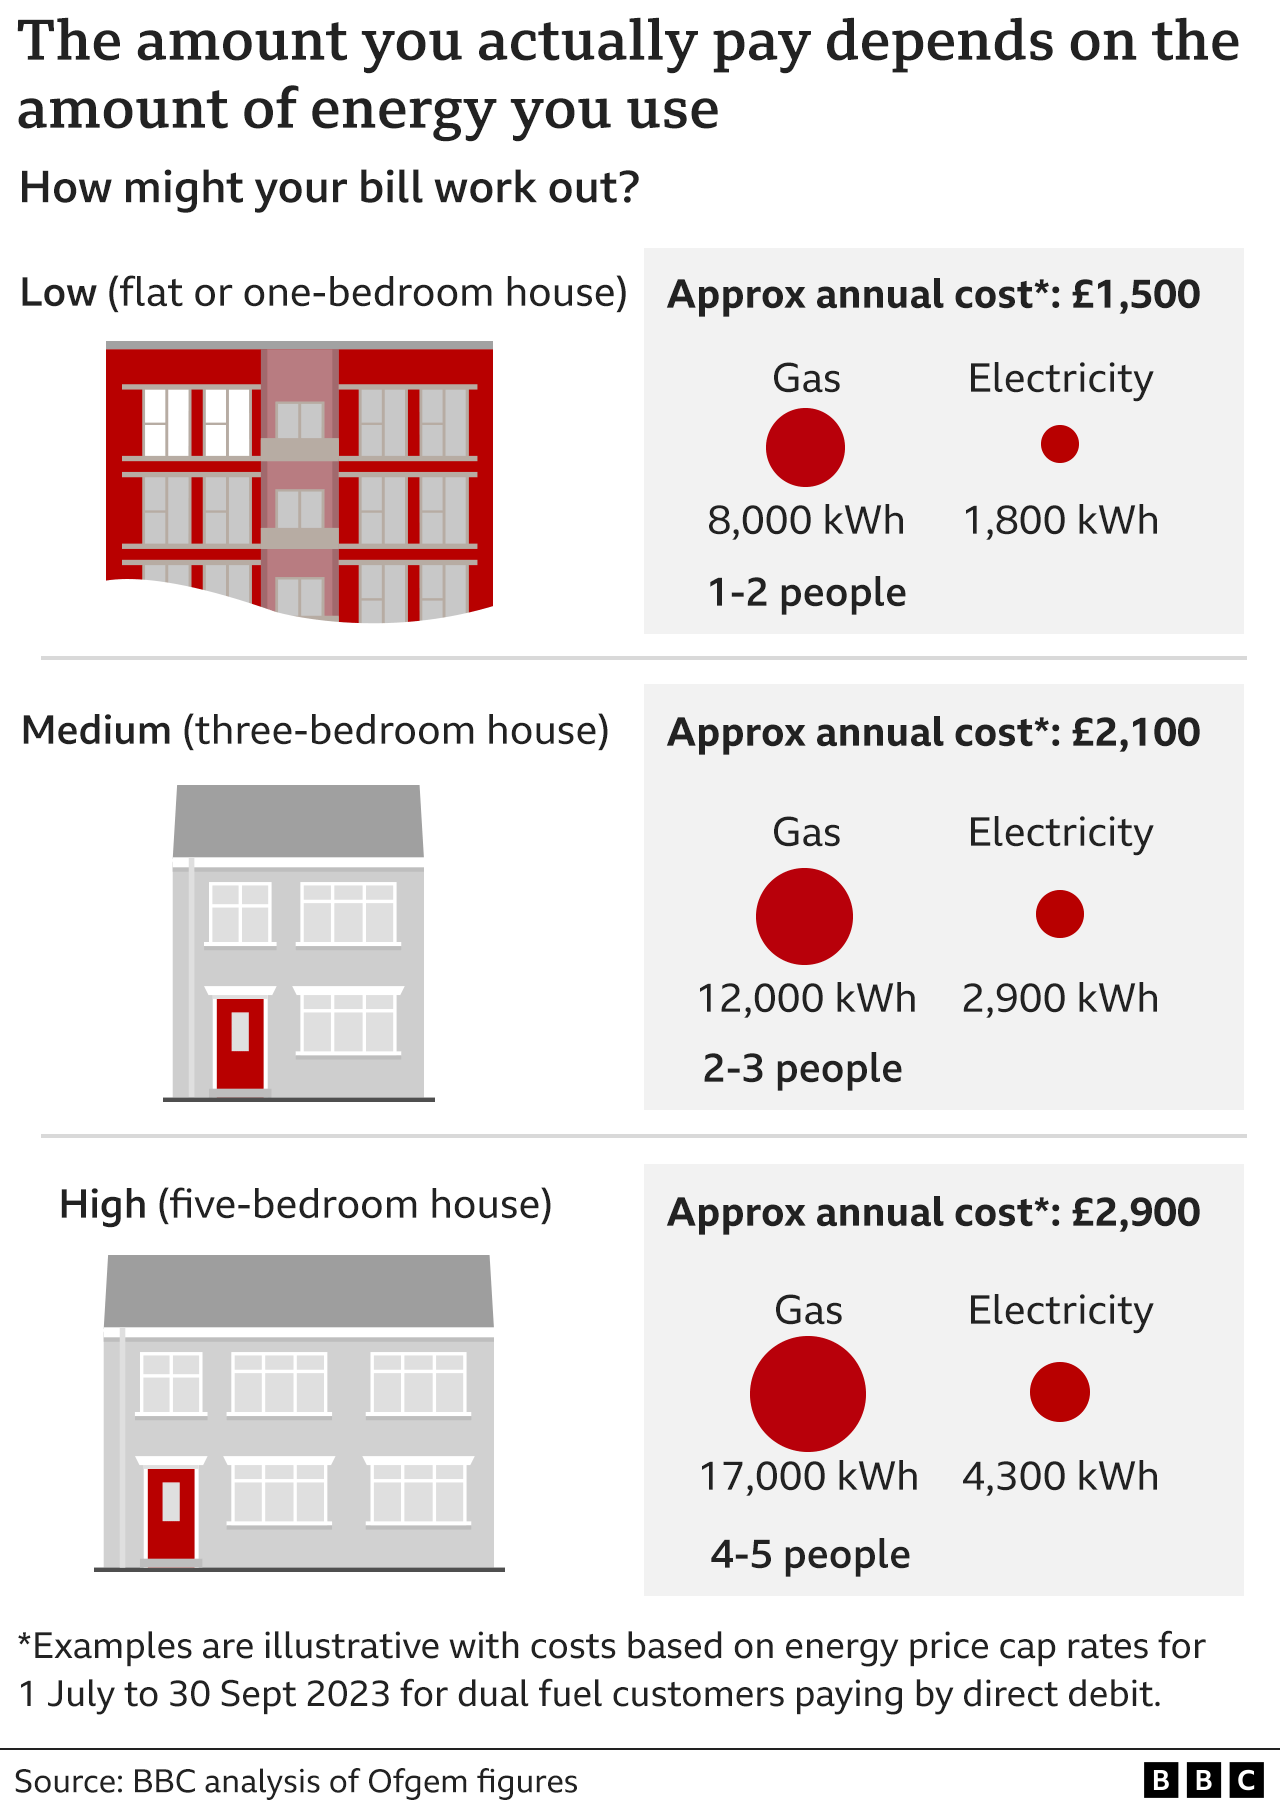 Gráfico que muestra cómo los diferentes hogares pagarán diferentes facturas de energía